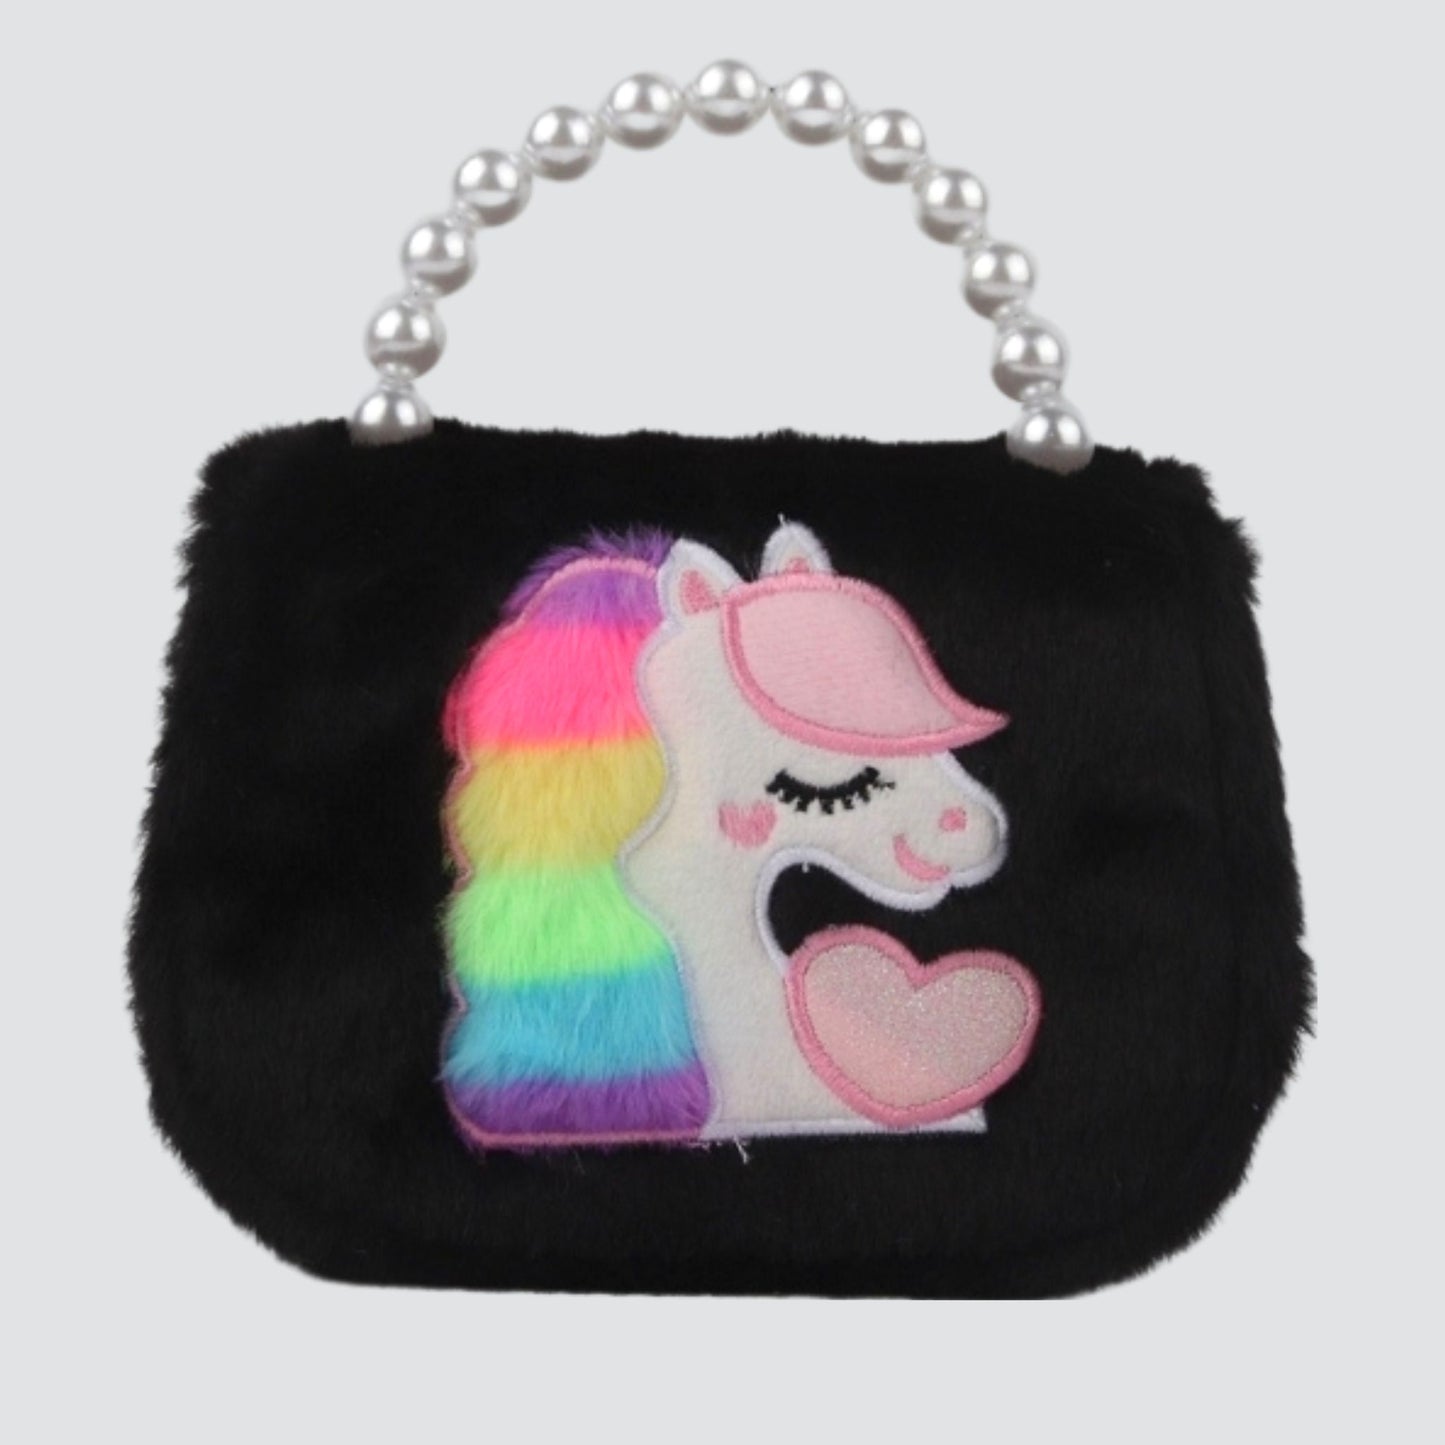 Black Unicorn Crossbody / Handbag